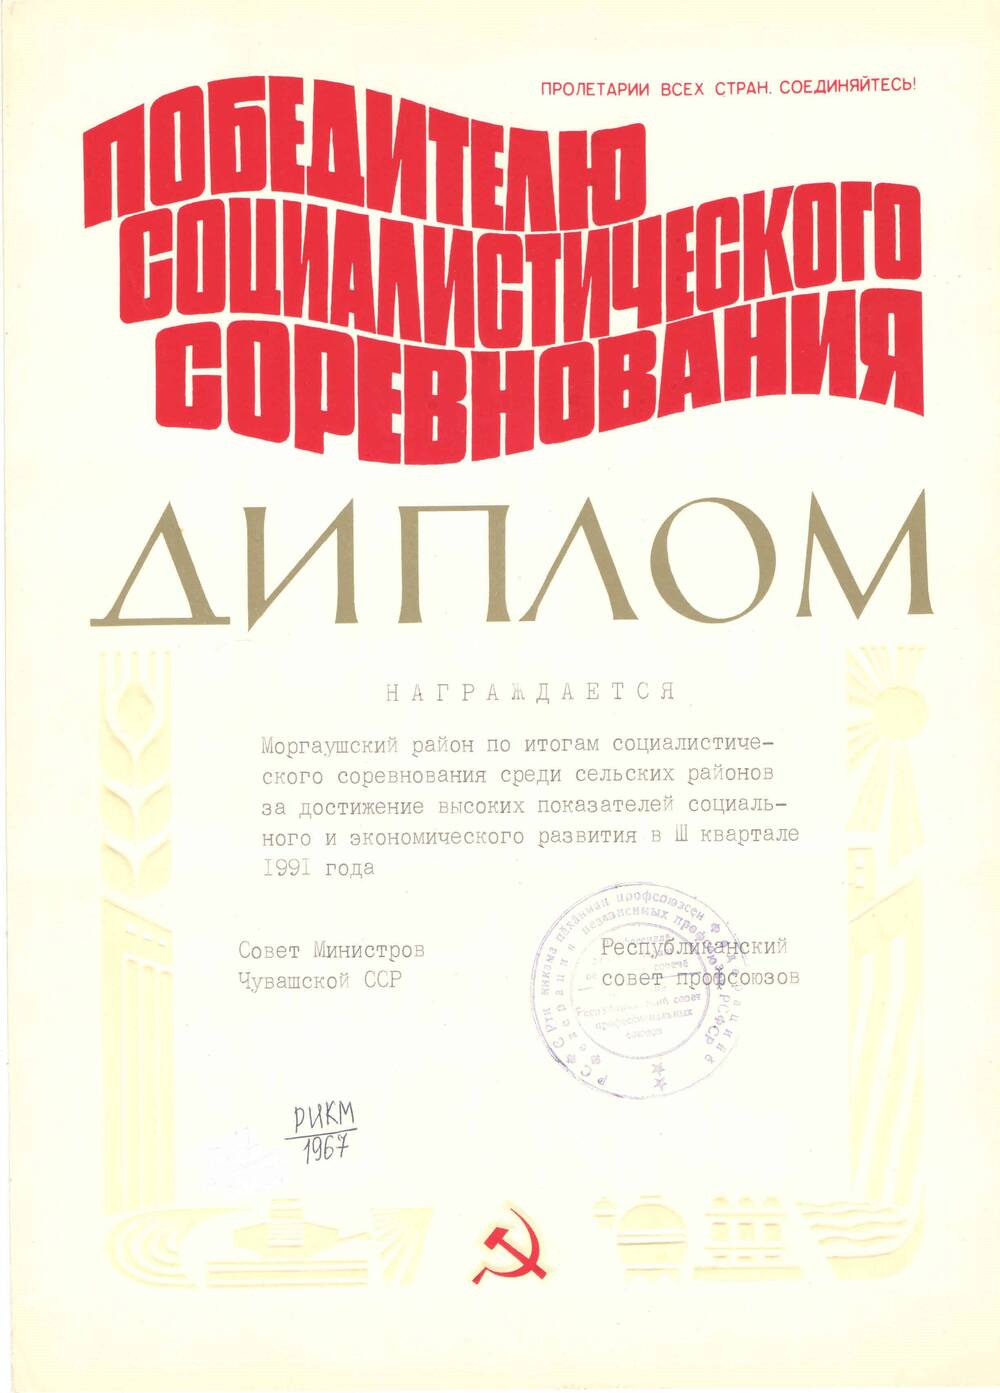 Документ. Диплом Моргаушского района по итогам социалистического соревнования среди сельских районов в III квартале 1991 года.